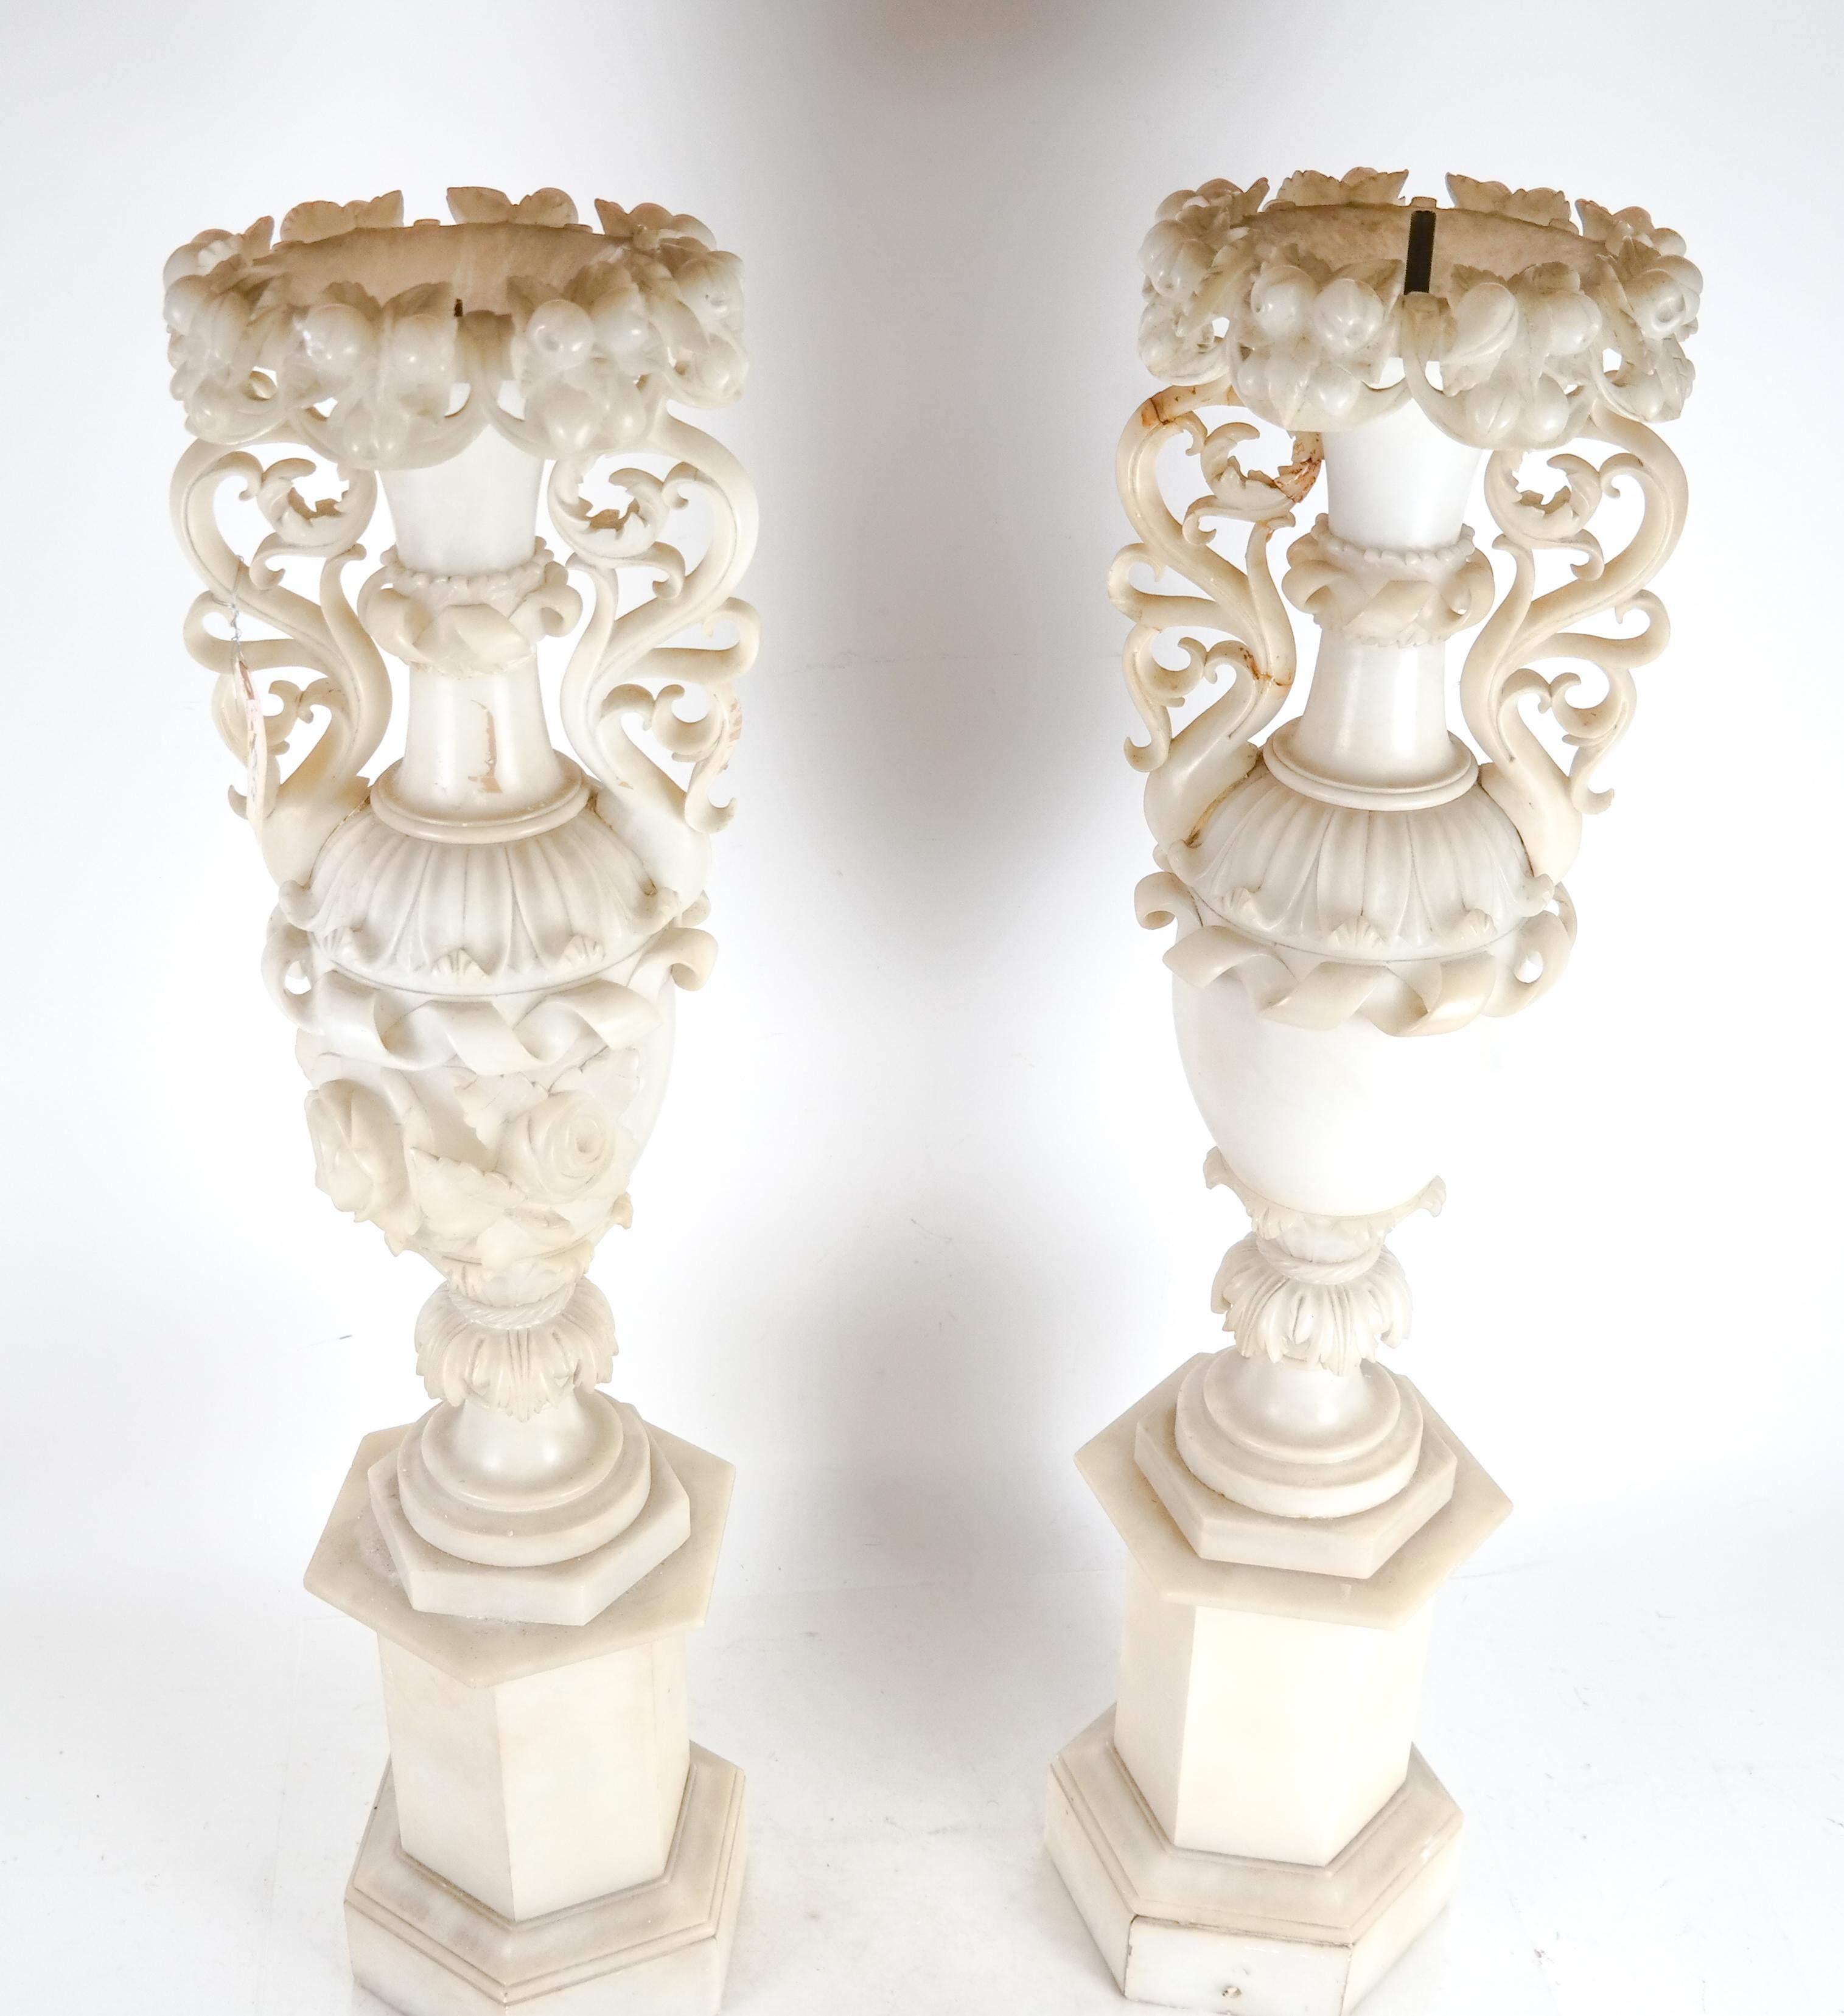 Paire de vases monumentaux en albâtre italiens du 19e siècle transformés en lampes, avec de magnifiques sculptures de fleurs et de fruits. Taille très impressionnante et sculpture de grande qualité.
Ils peuvent facilement être reconvertis en vases.